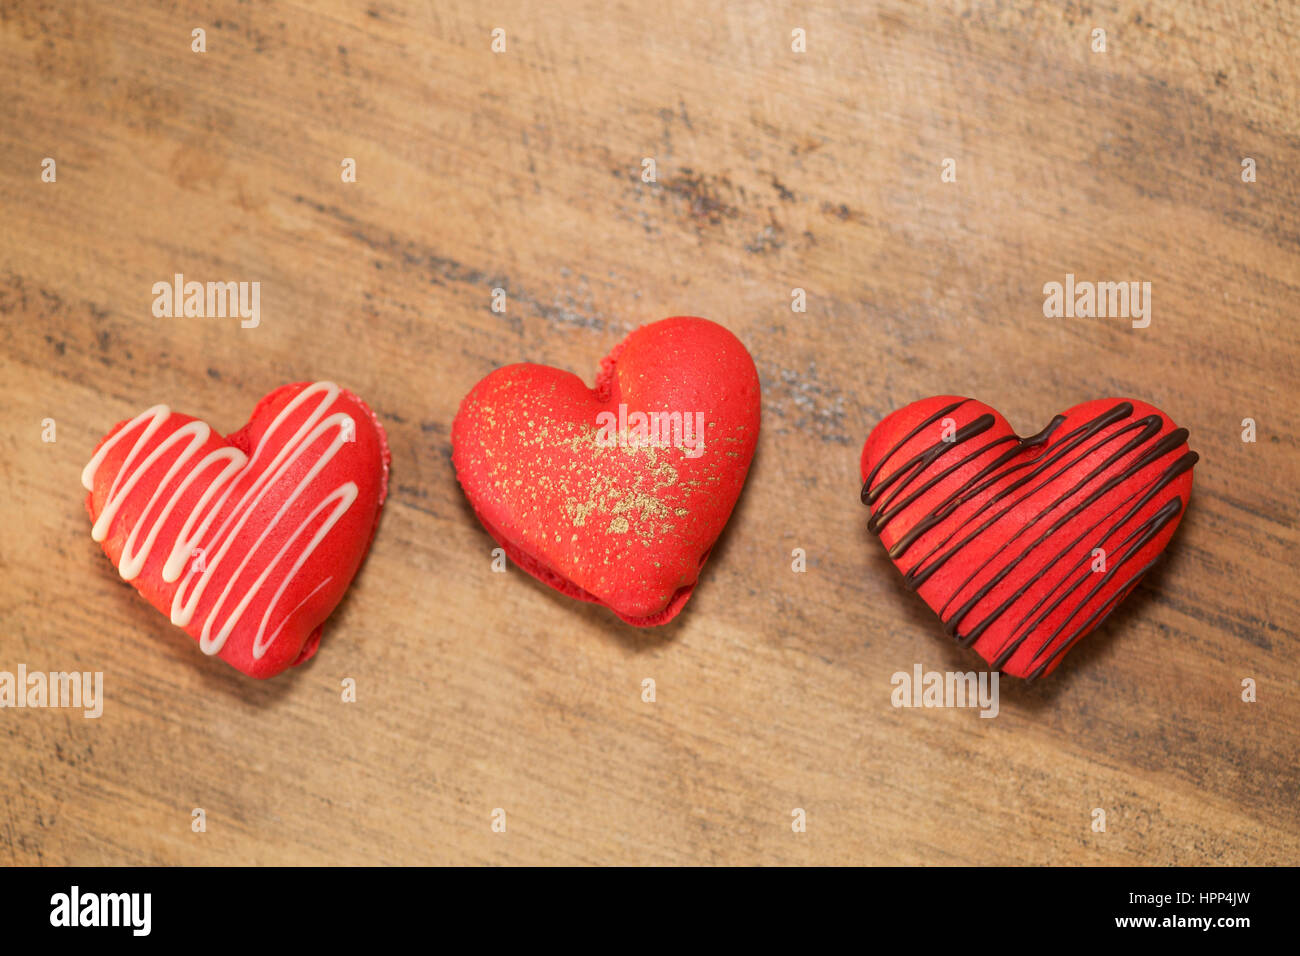 Herzförmige Erdbeermakronen, dekoriert mit Schokolade und Gold zum Valentinstag, auf Holzoberfläche Stockfoto